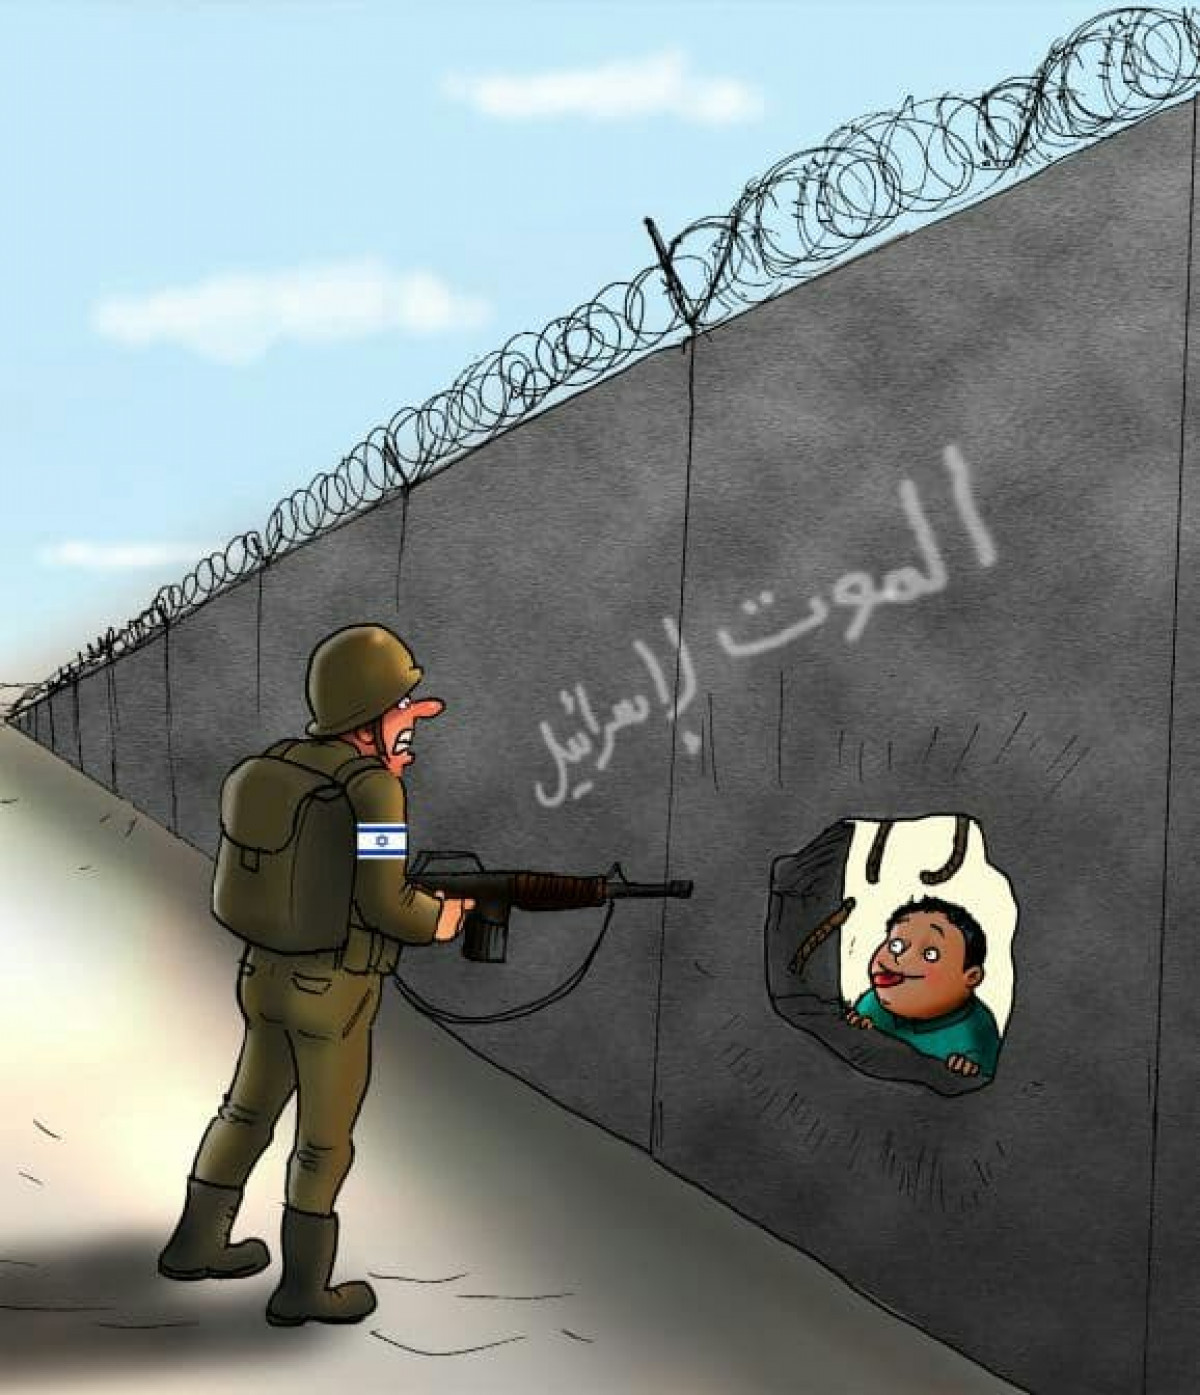 كاريكاتير / الموت لإسرائيل